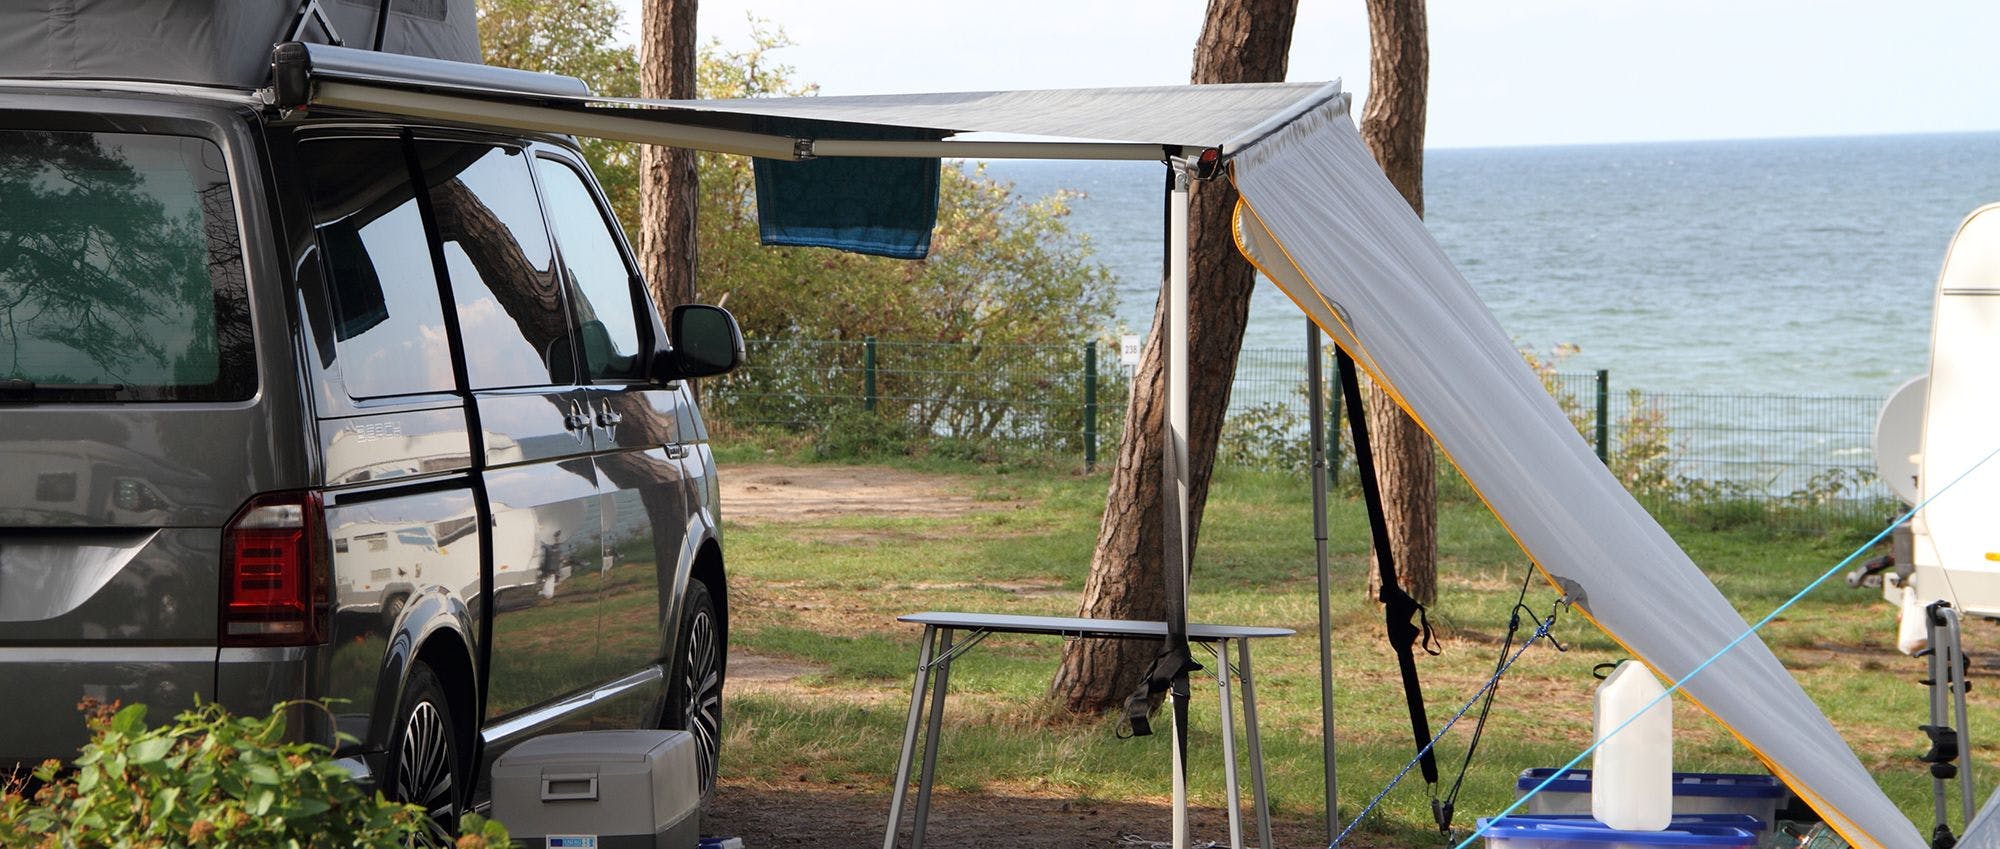 Les options utiles pour votre camping-car - shutterstock_1871696656.jpg